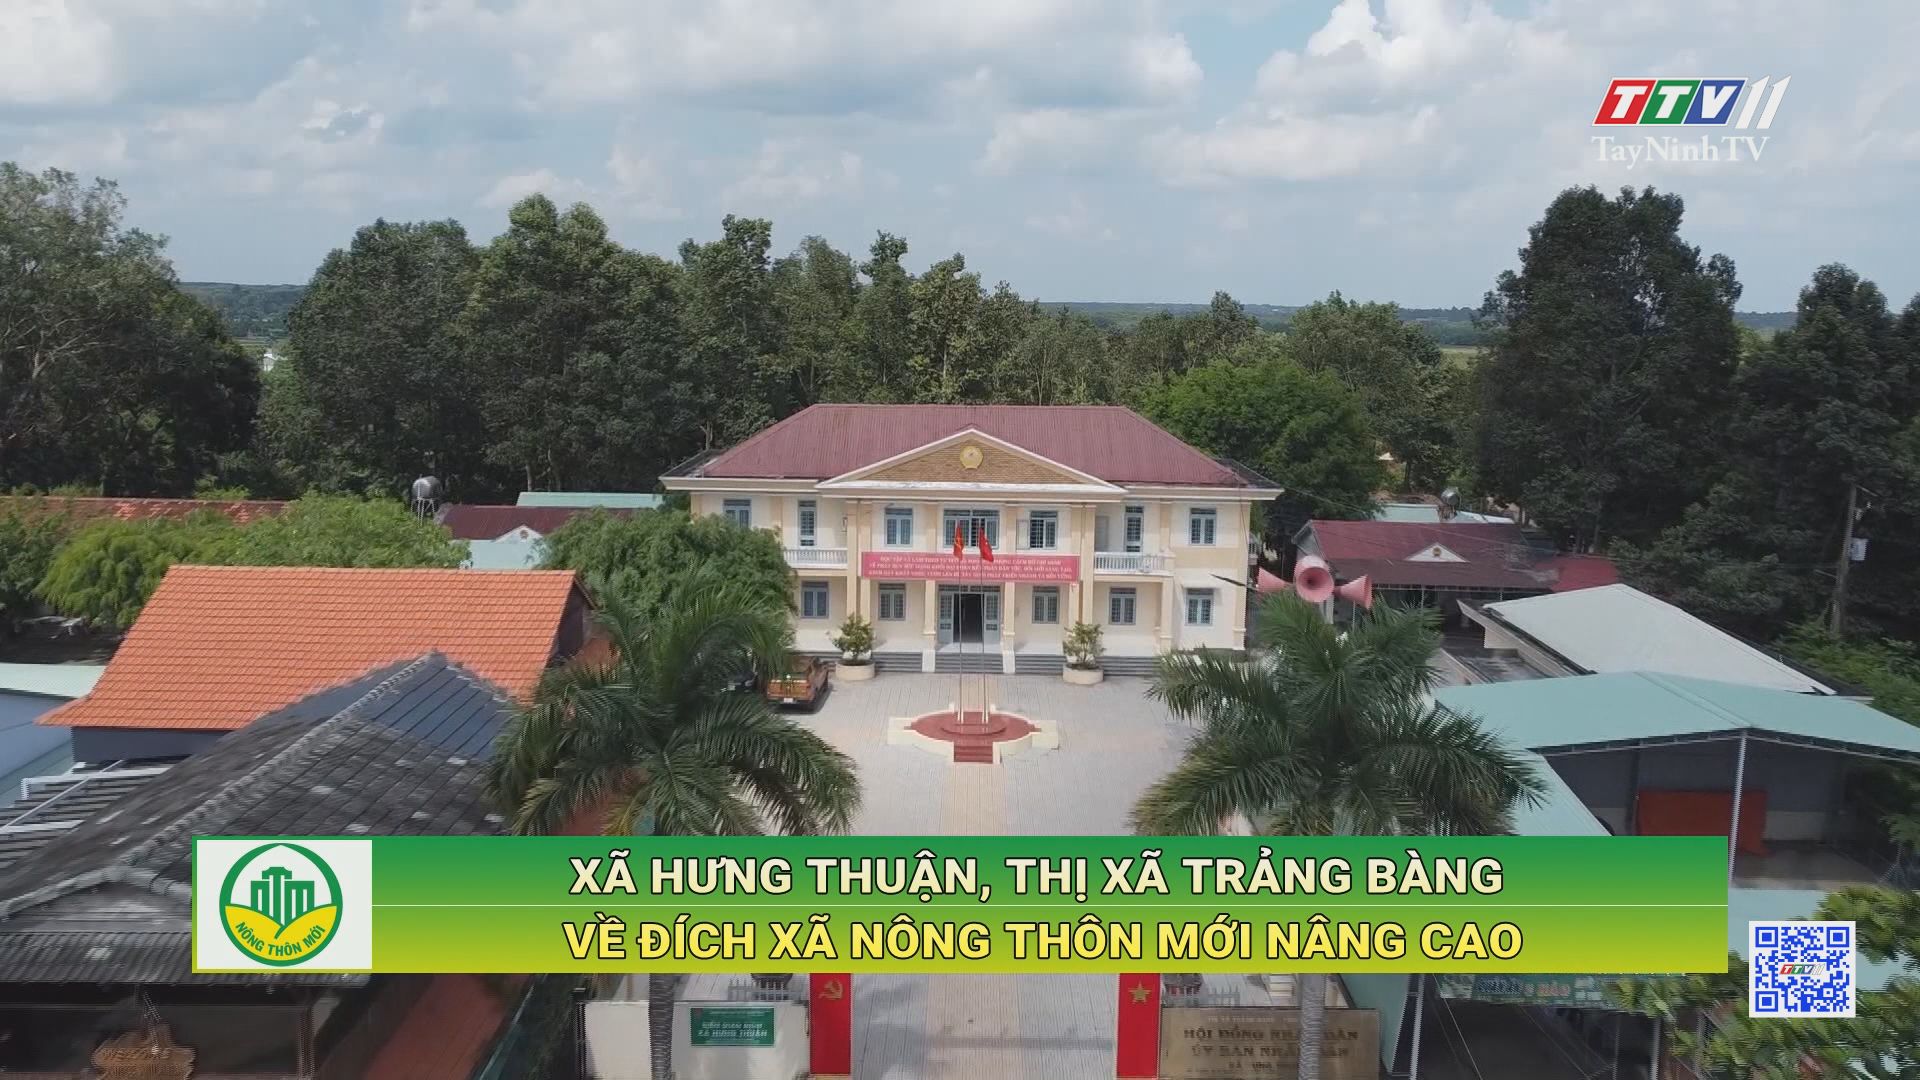 Xã Hưng Thuận, thị xã Trảng Bàng về đích xã Nông thôn mới nâng cao | TayNinhTV